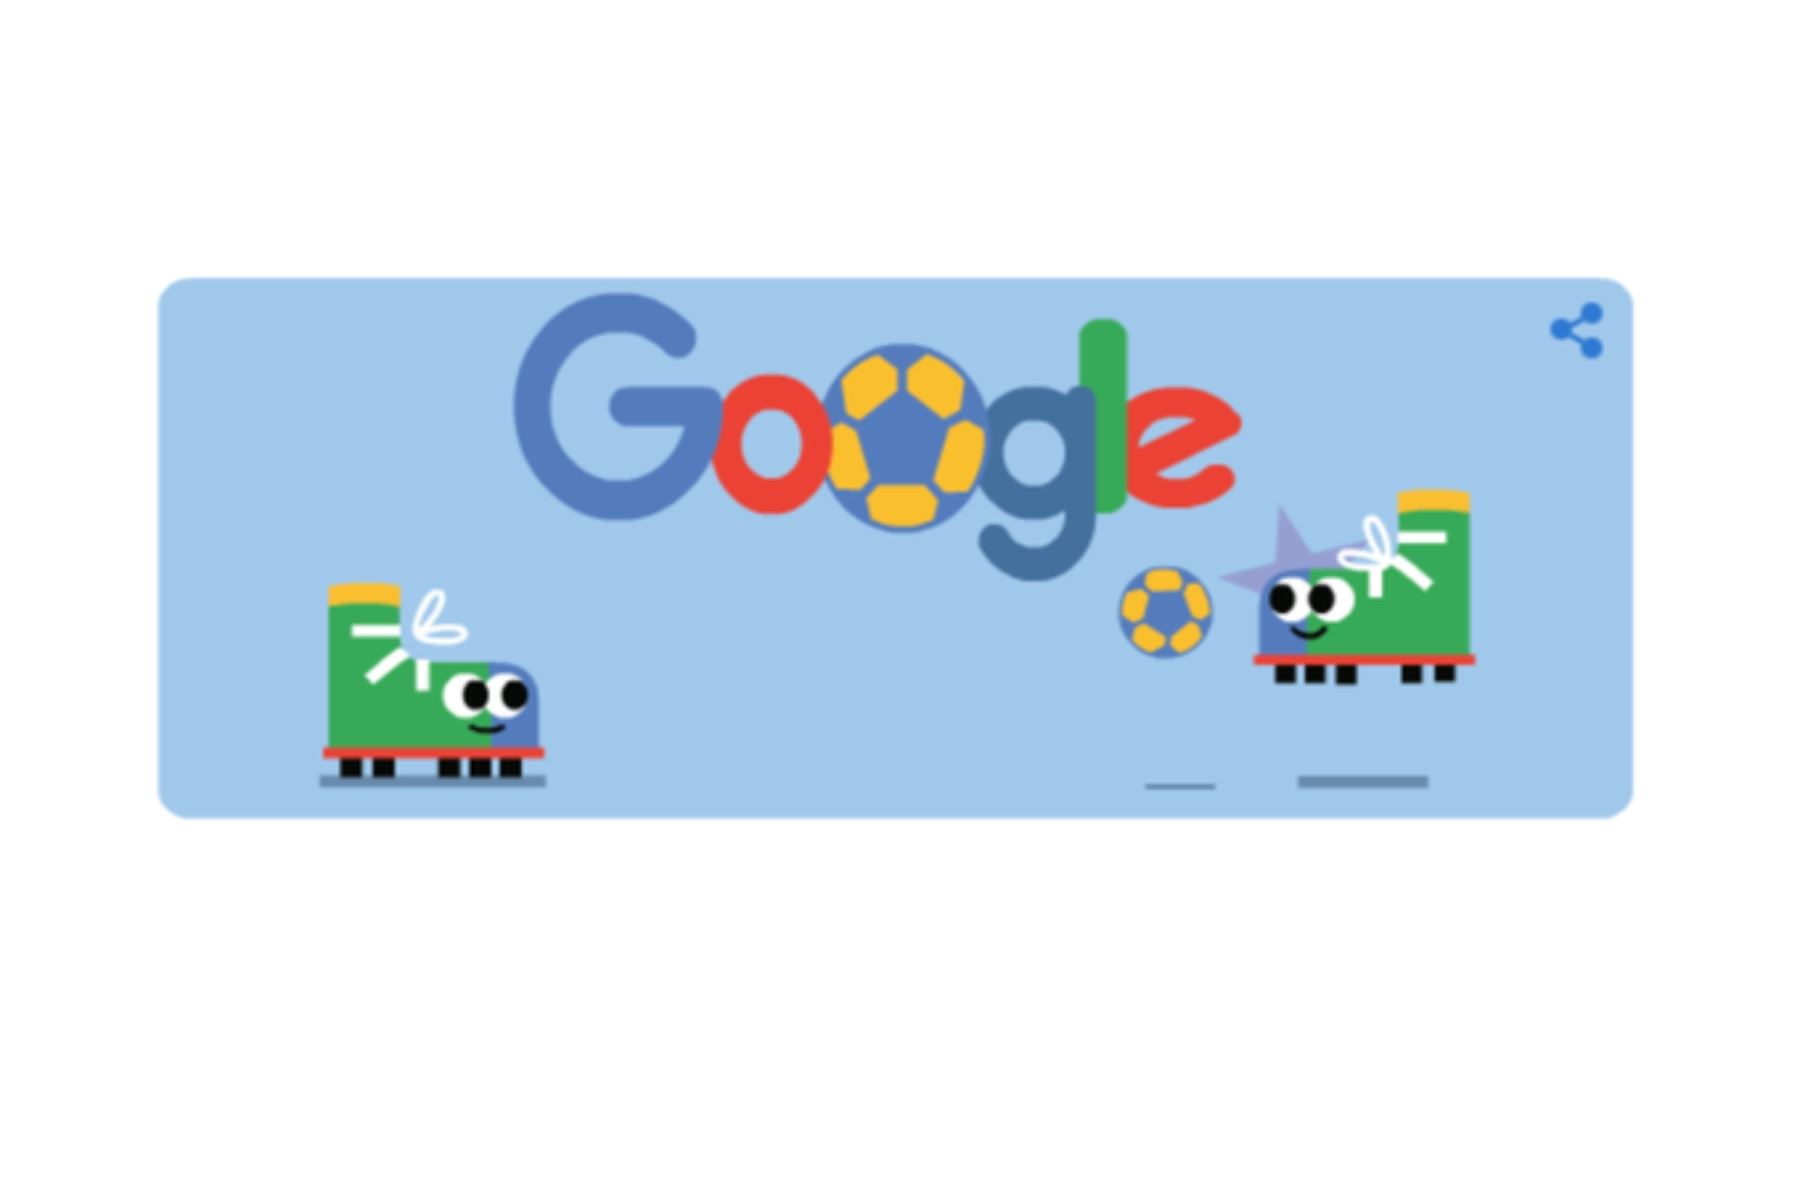 Google vive la previa del inicio de la cita mundialista que se realiza cada 4 años. En su portada ya se puede visualizar el nuevo diseño. Foto: Internet/Medios